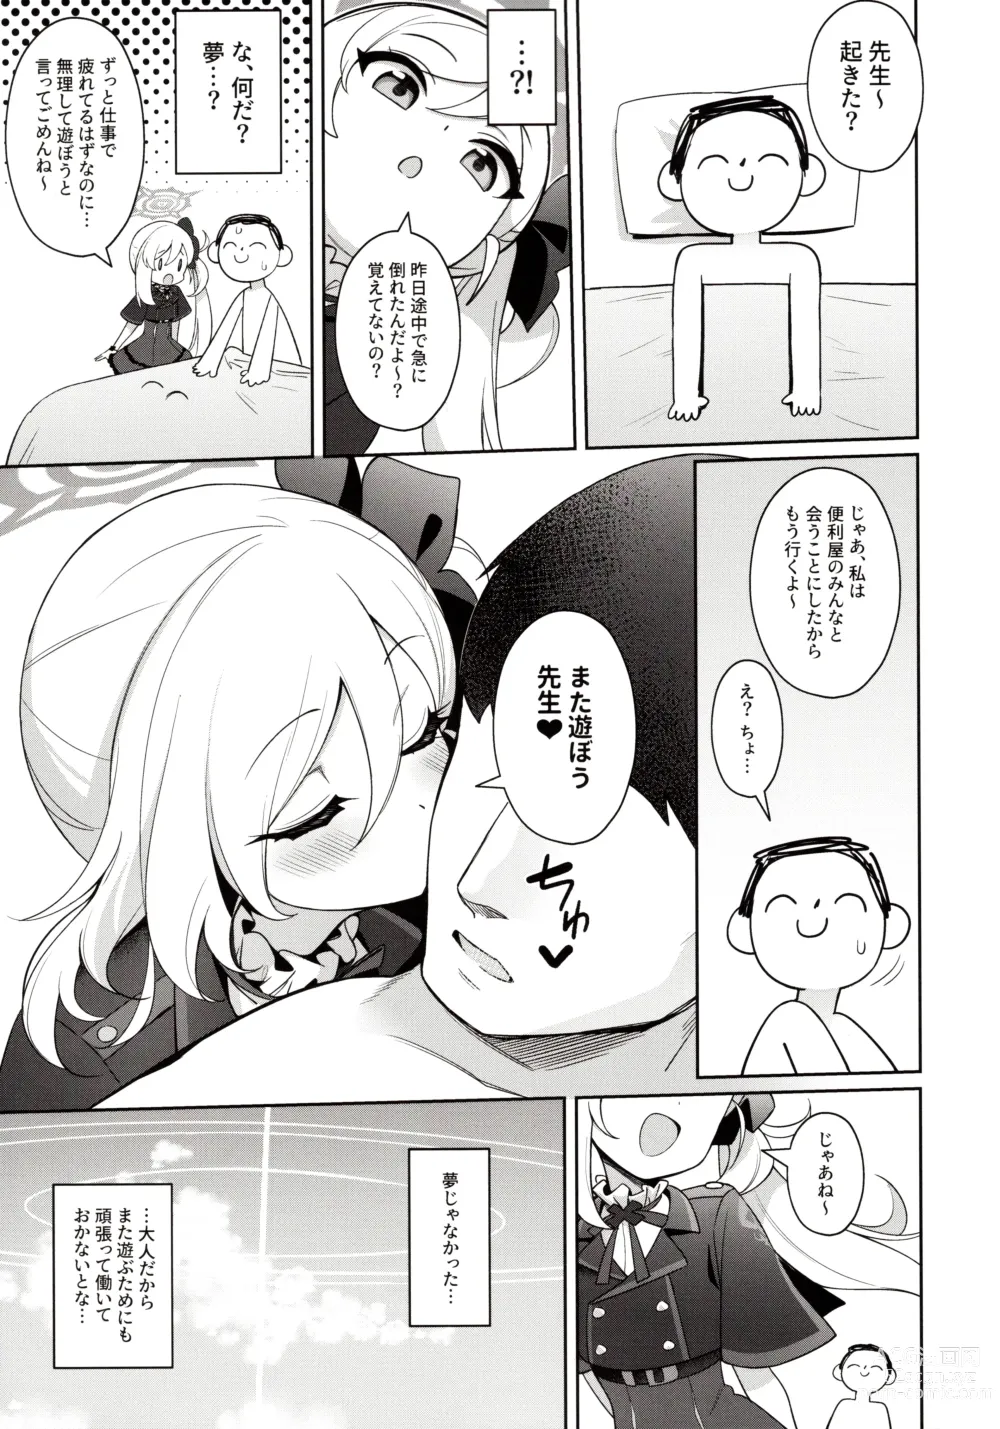 Page 23 of doujinshi Mutsuki wa Otona no Asobi ga Shitai